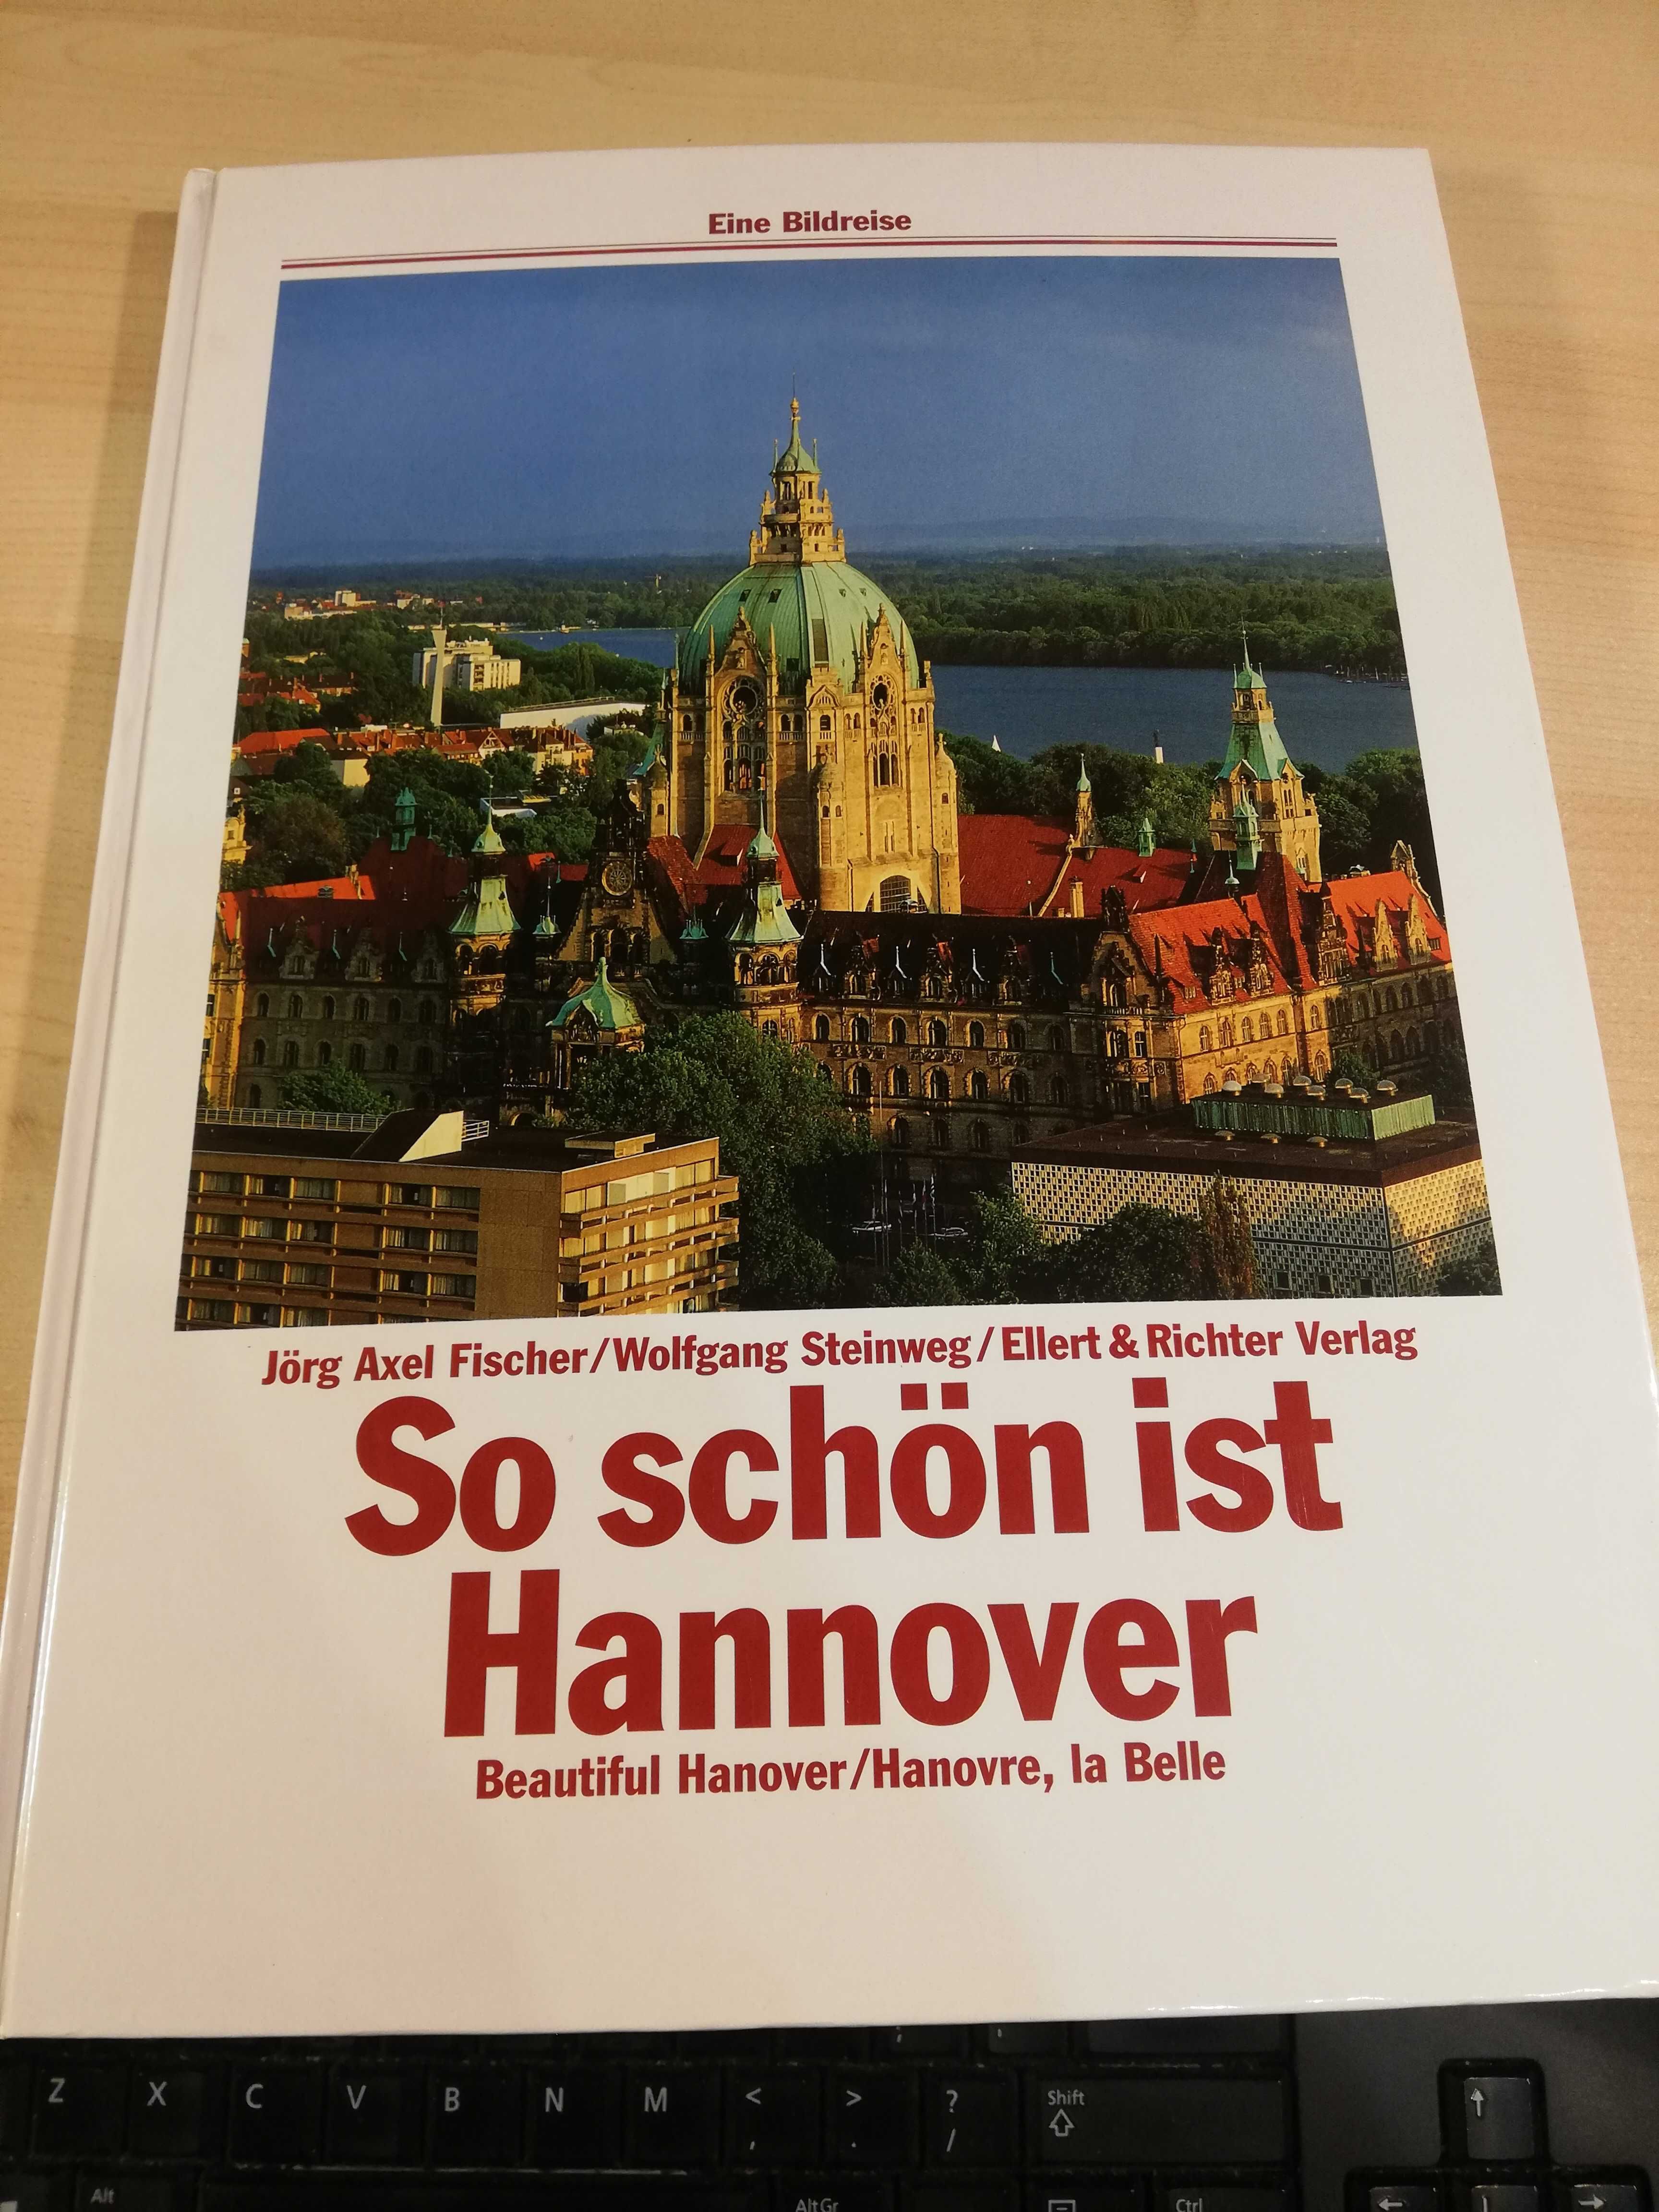 Album Hannover So schon ist w 3 językach